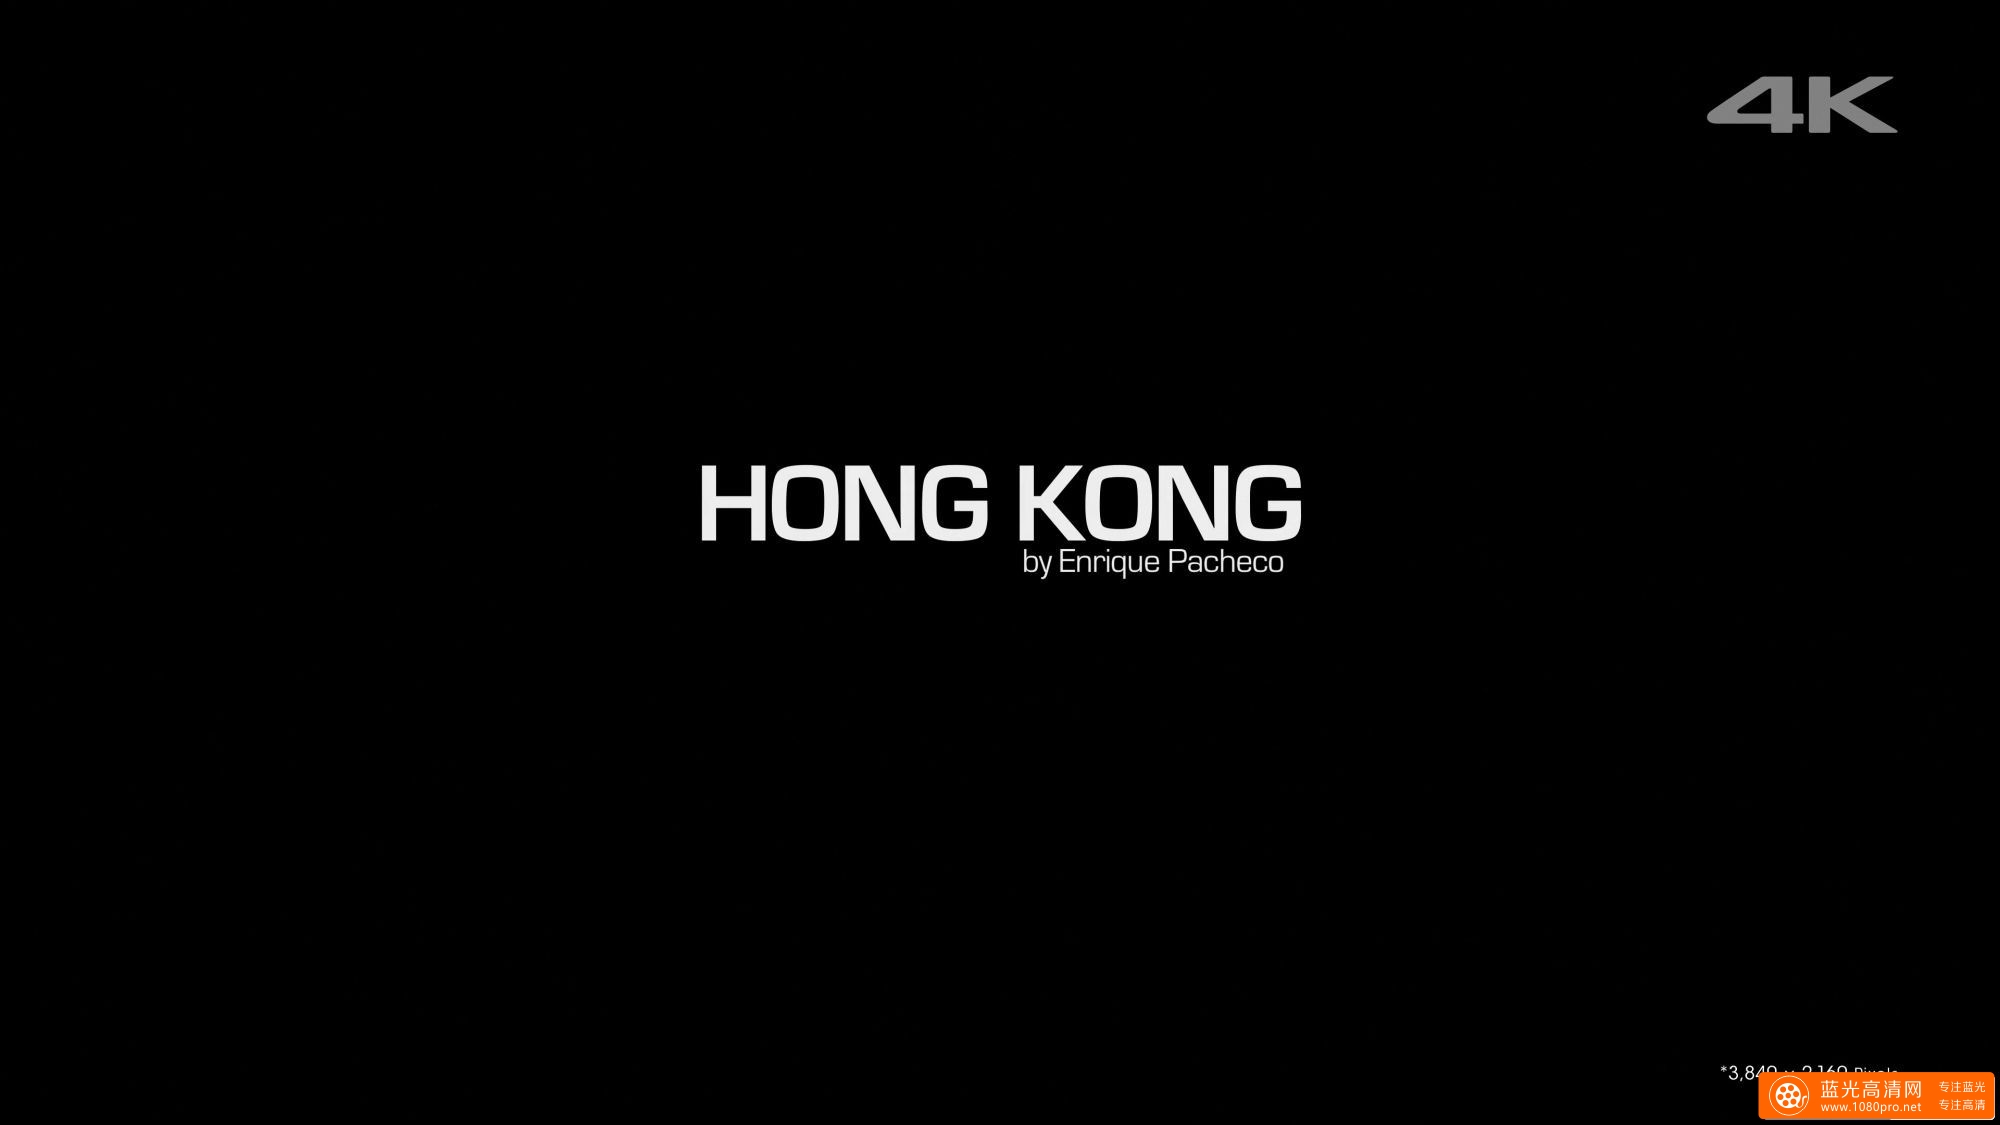 索尼4K智能电视演示片 - 香港延时摄影 (高码率) [2160P-MKV-473MB]SONY.4K.DEMO_Hong.Kong.Timelapse ... ...